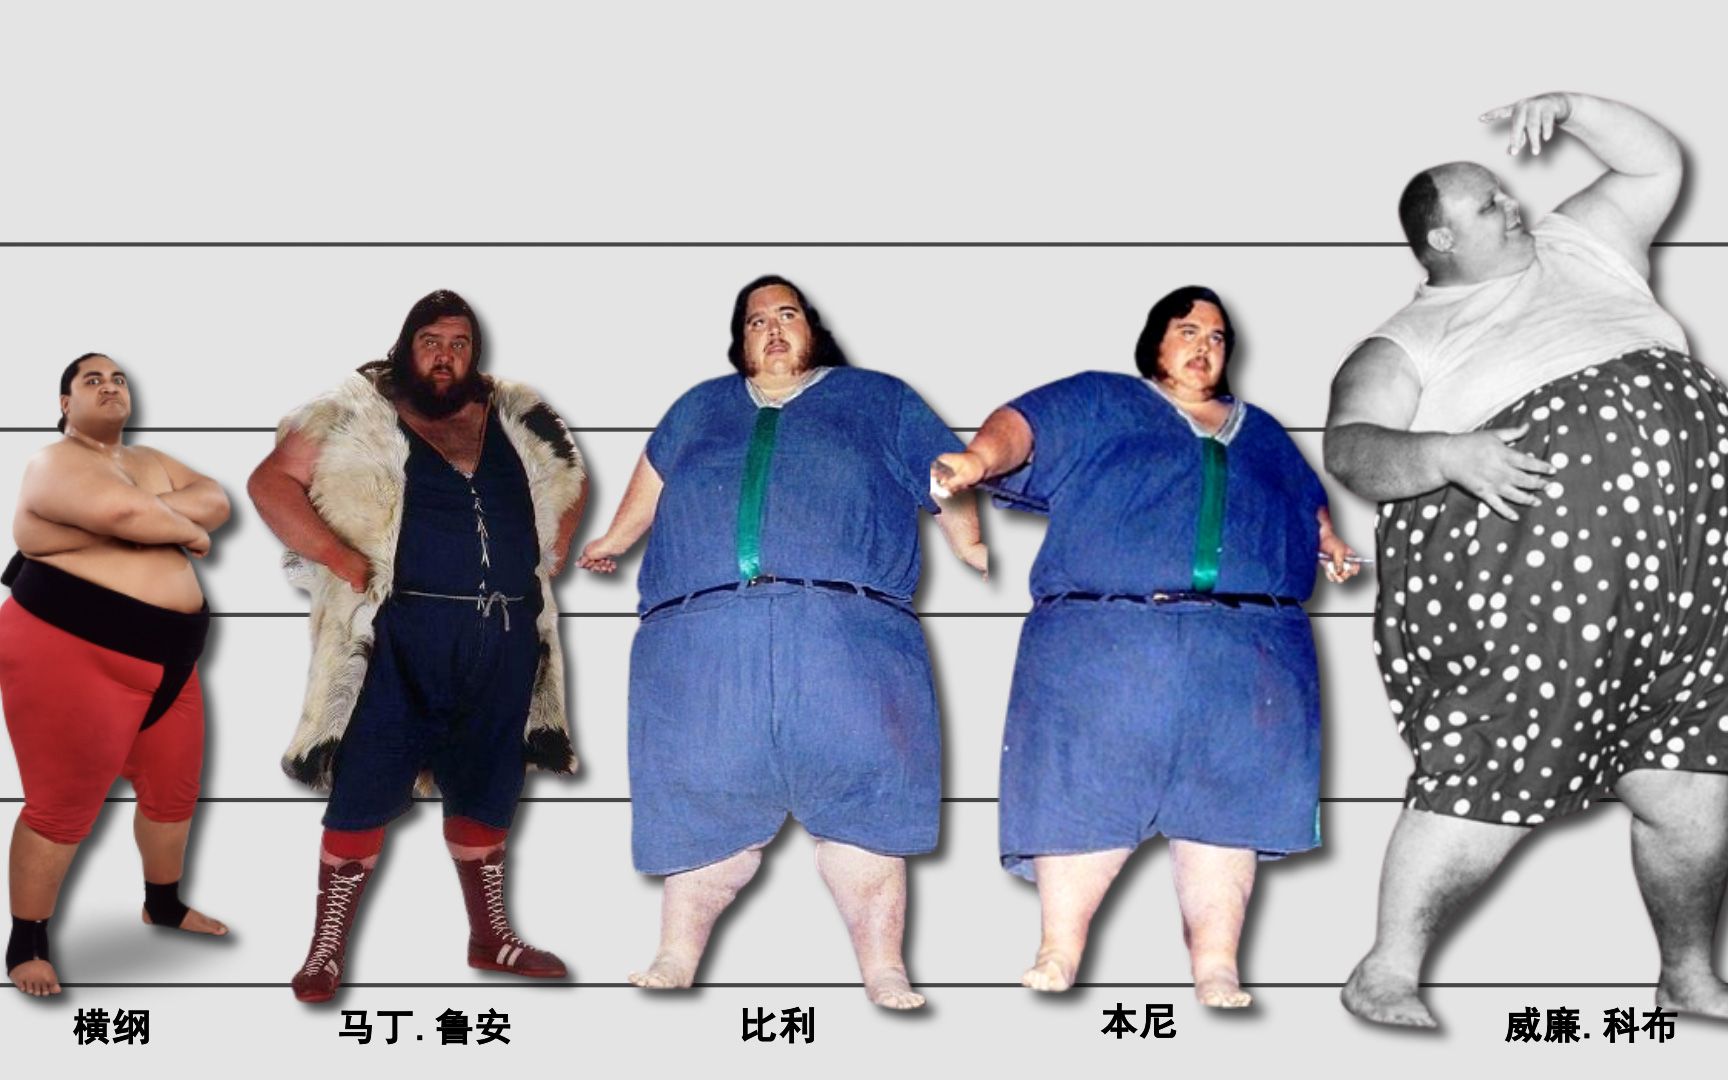 昔日世界最重之男減掉546公斤 成為63公斤「小」伙子 - 消費券專頁